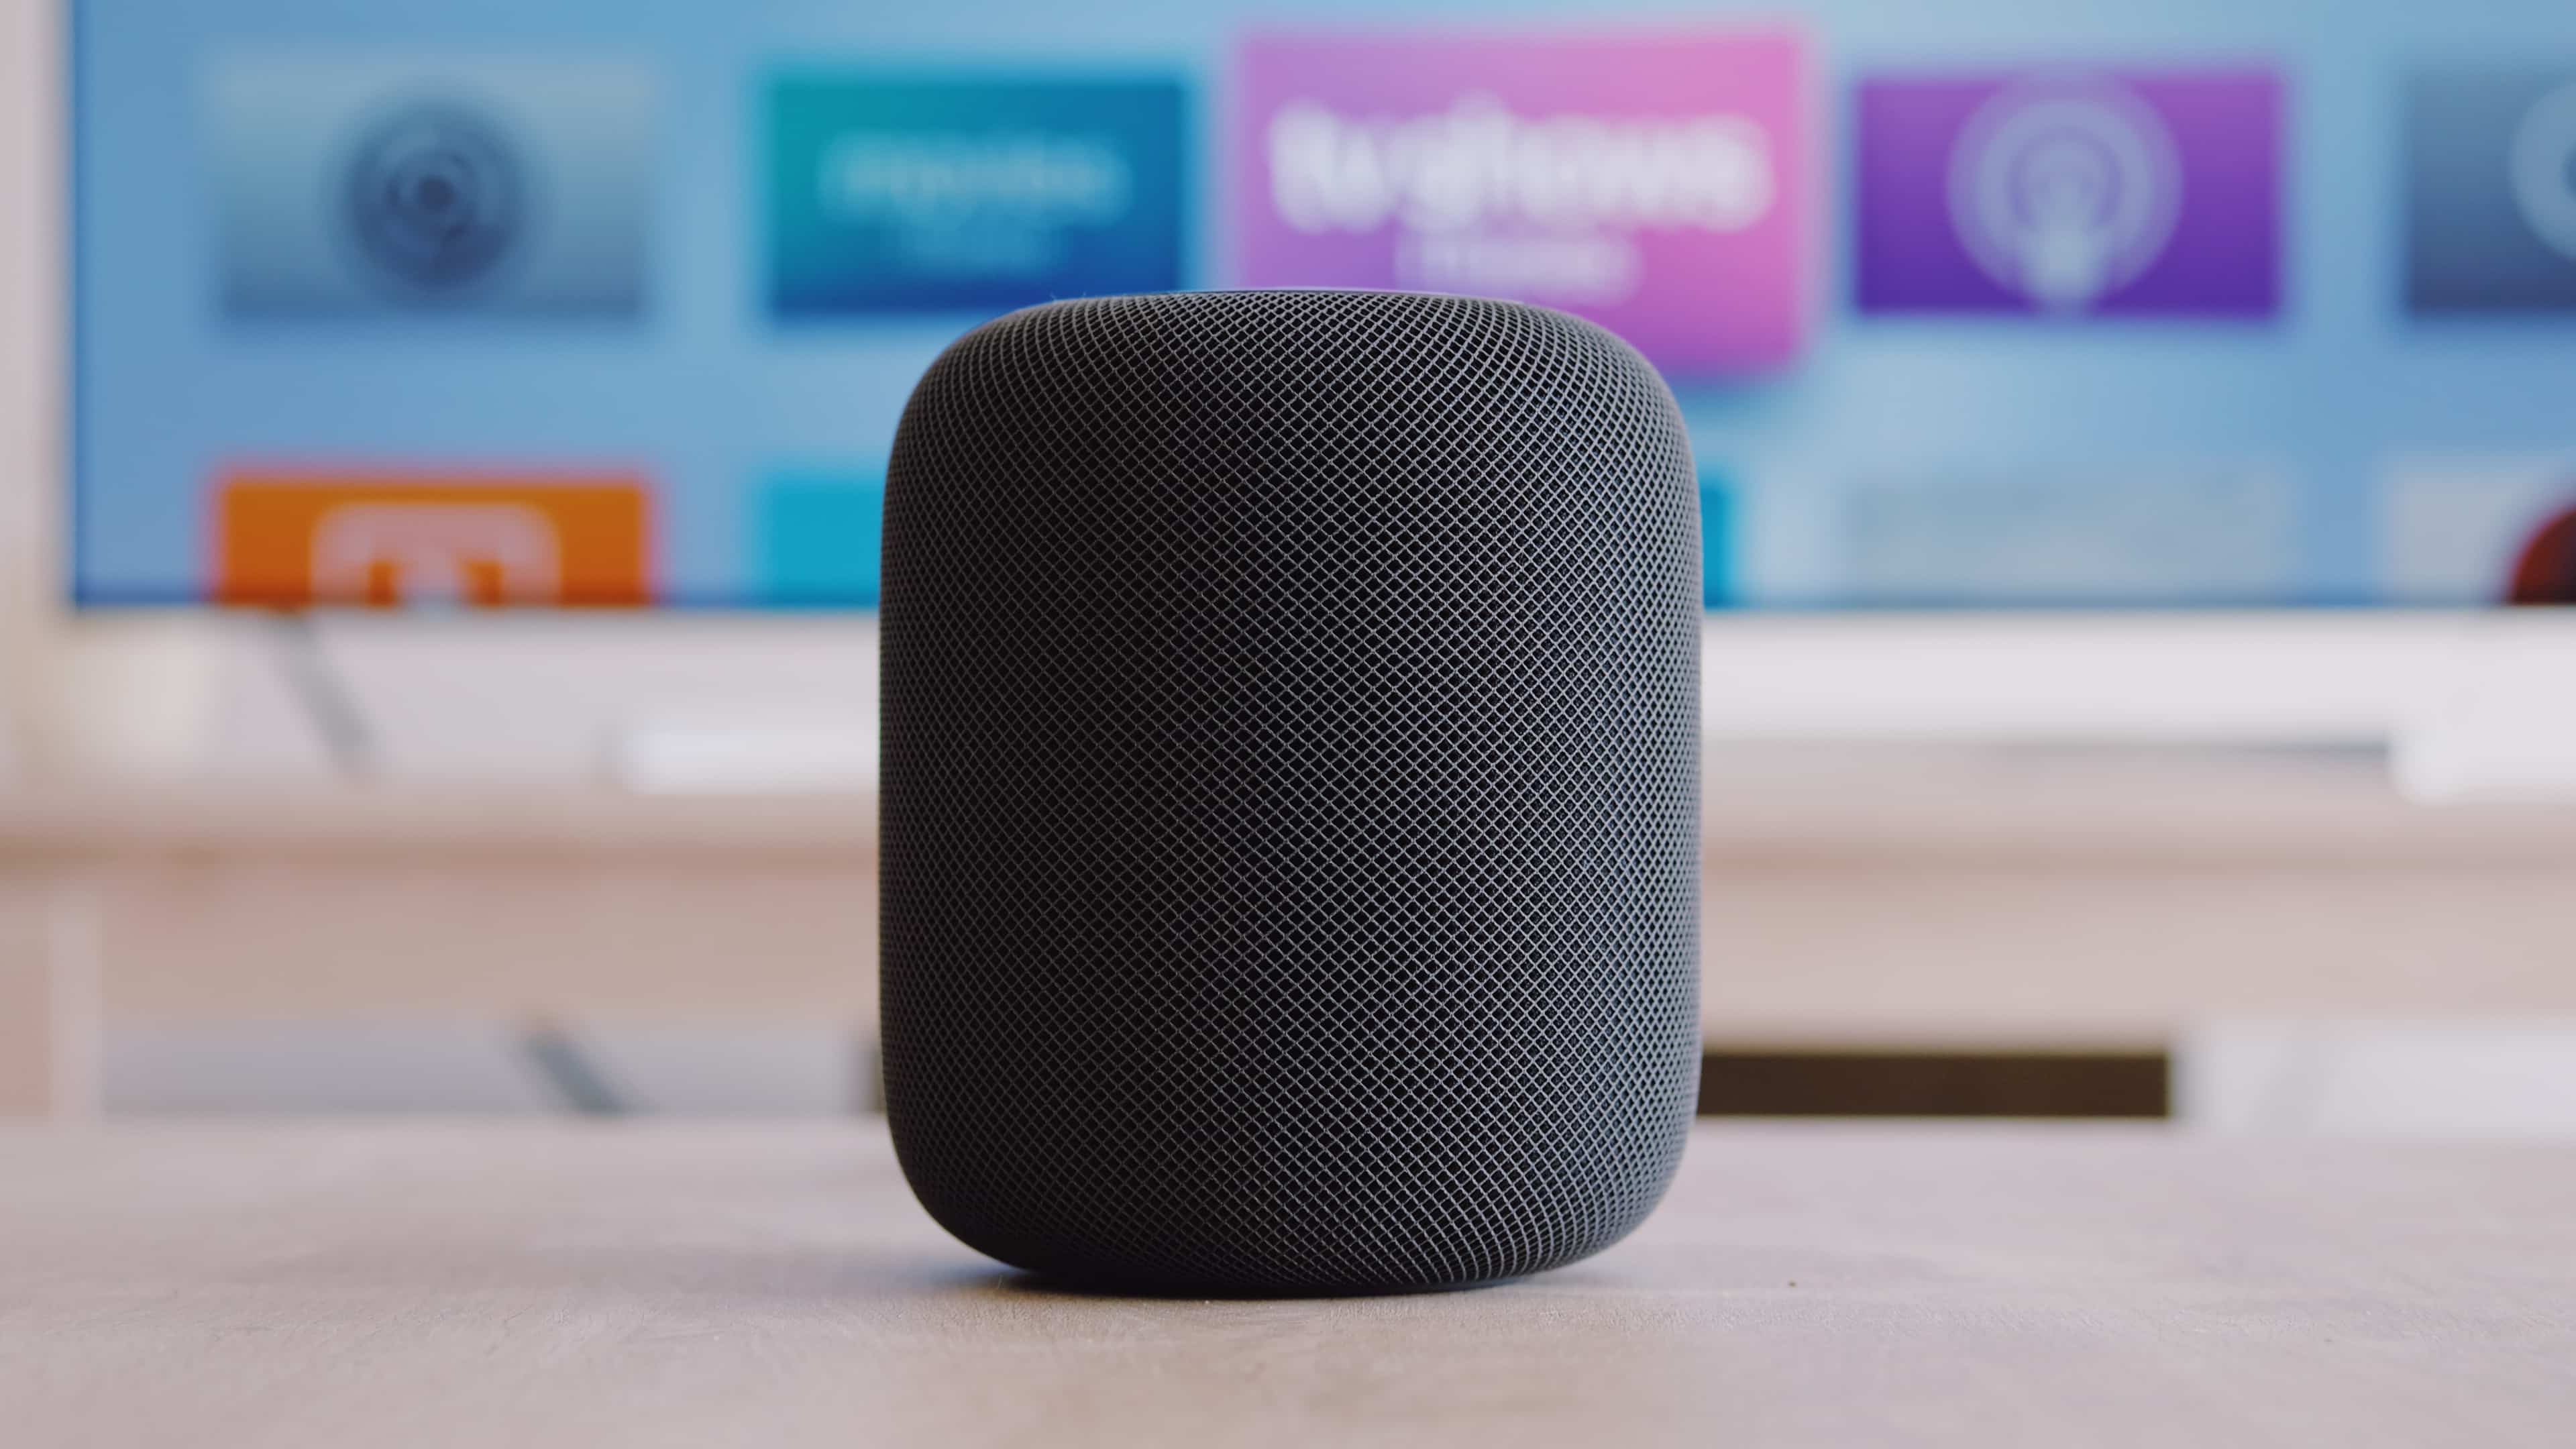 Speaker nirkabel Apple HomePod hitam diletakkan di atas meja di depan televisi yang menampilkan layar utama Apple TV